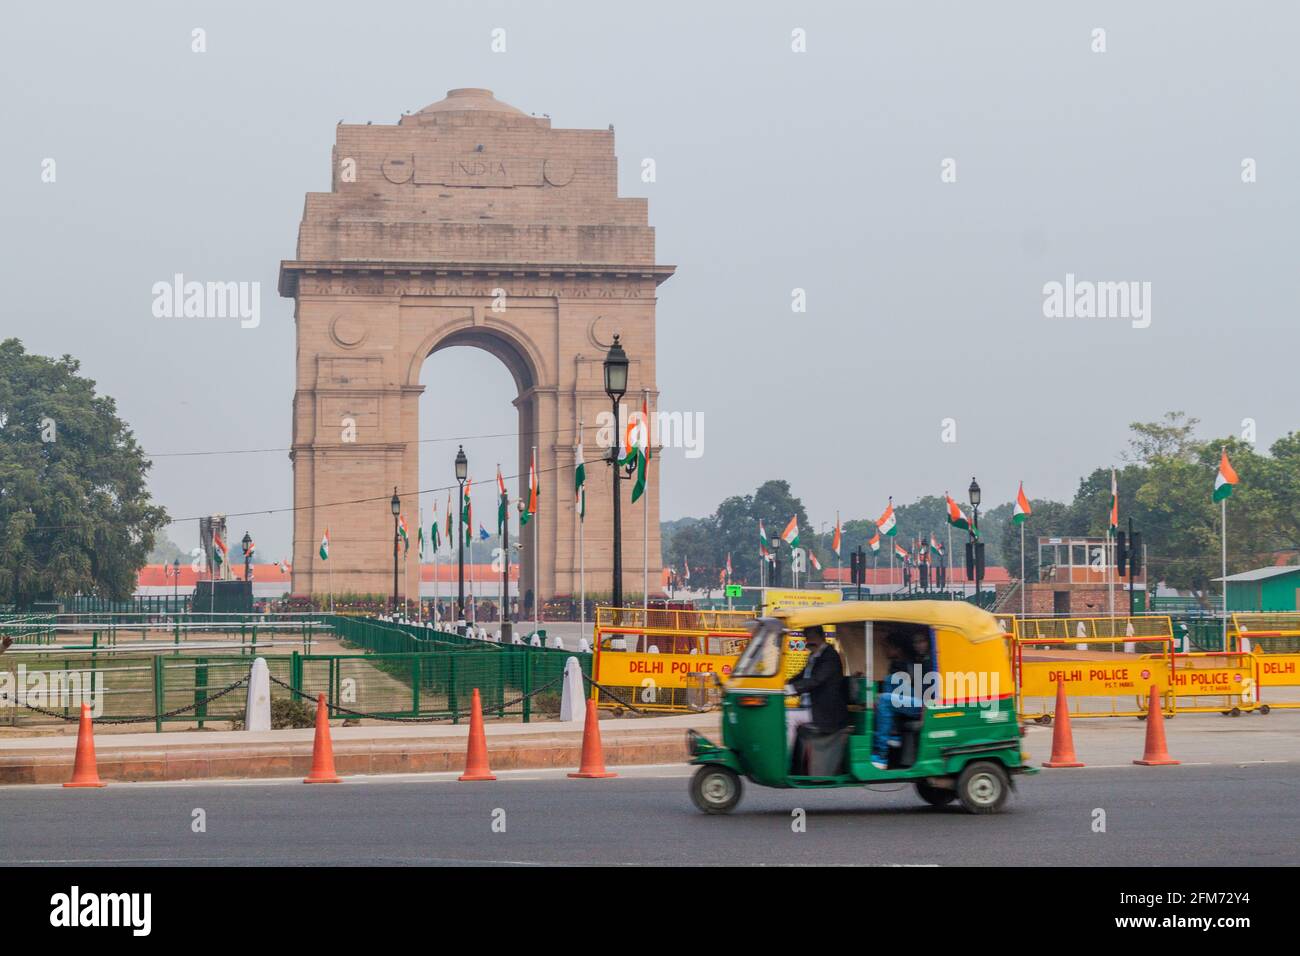 DELHI, INDE - 24 JANVIER 2017 : vue de la porte de l'Inde derrière les barrières de police de Delhi à New Delhi. Banque D'Images